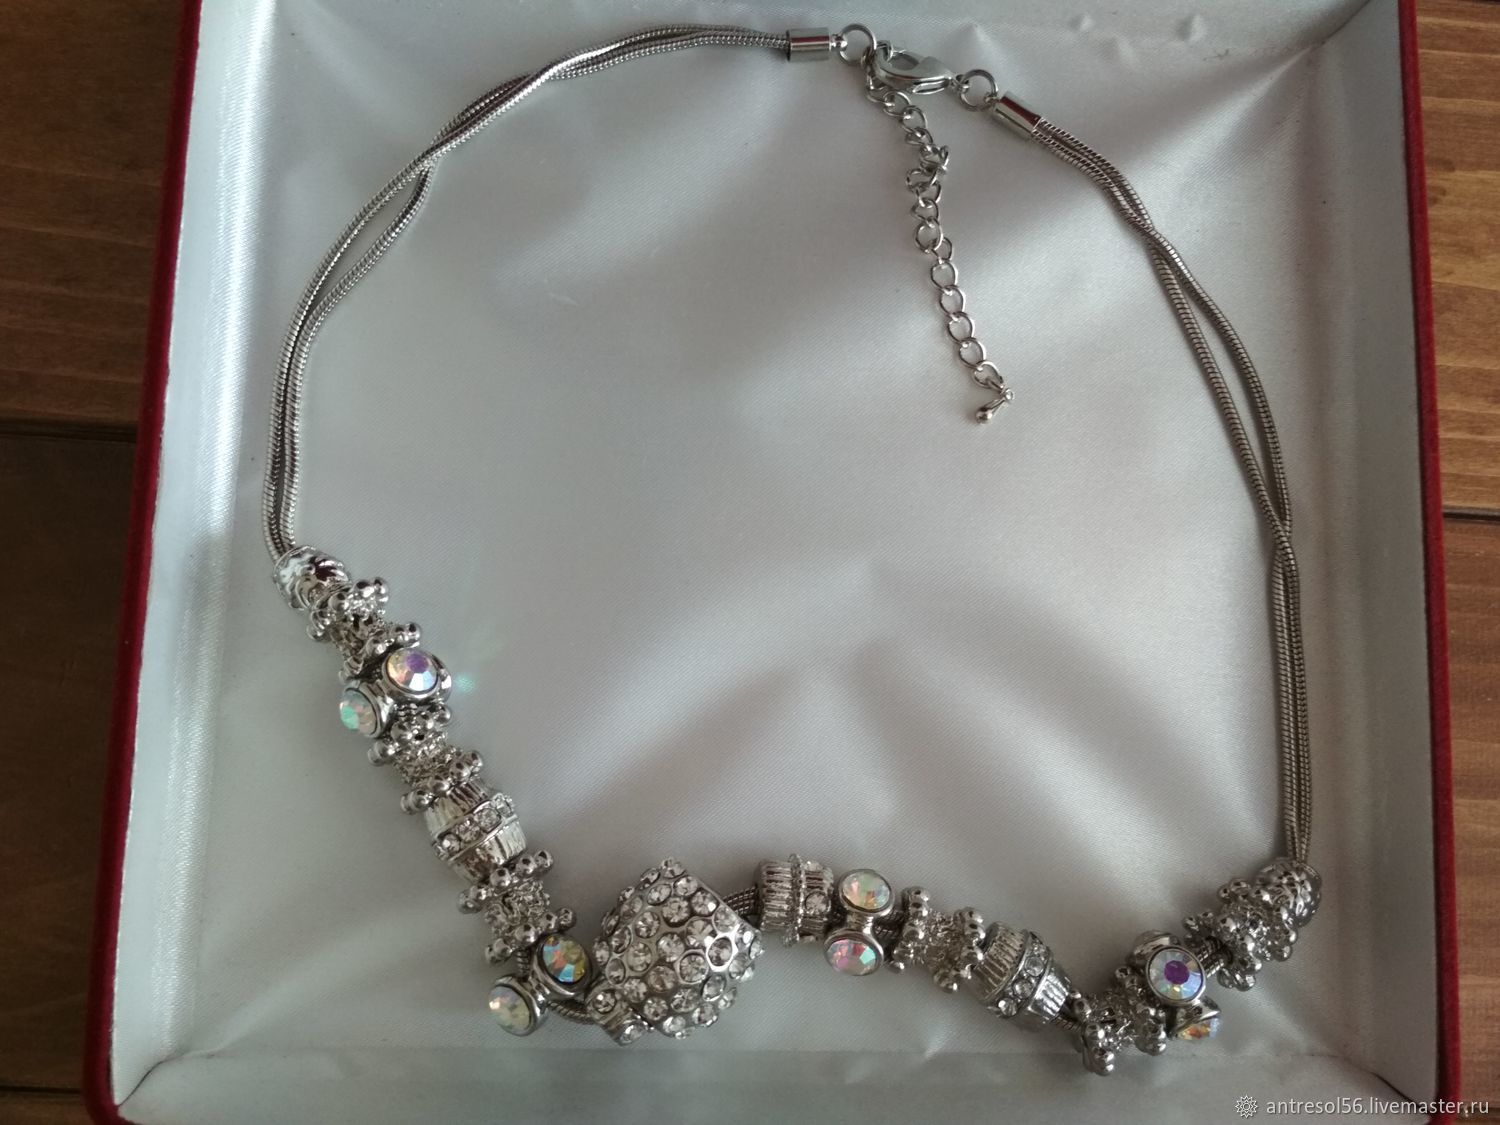  Necklace ' in gypsy style', Vintage necklace, Orenburg,  Фото №1